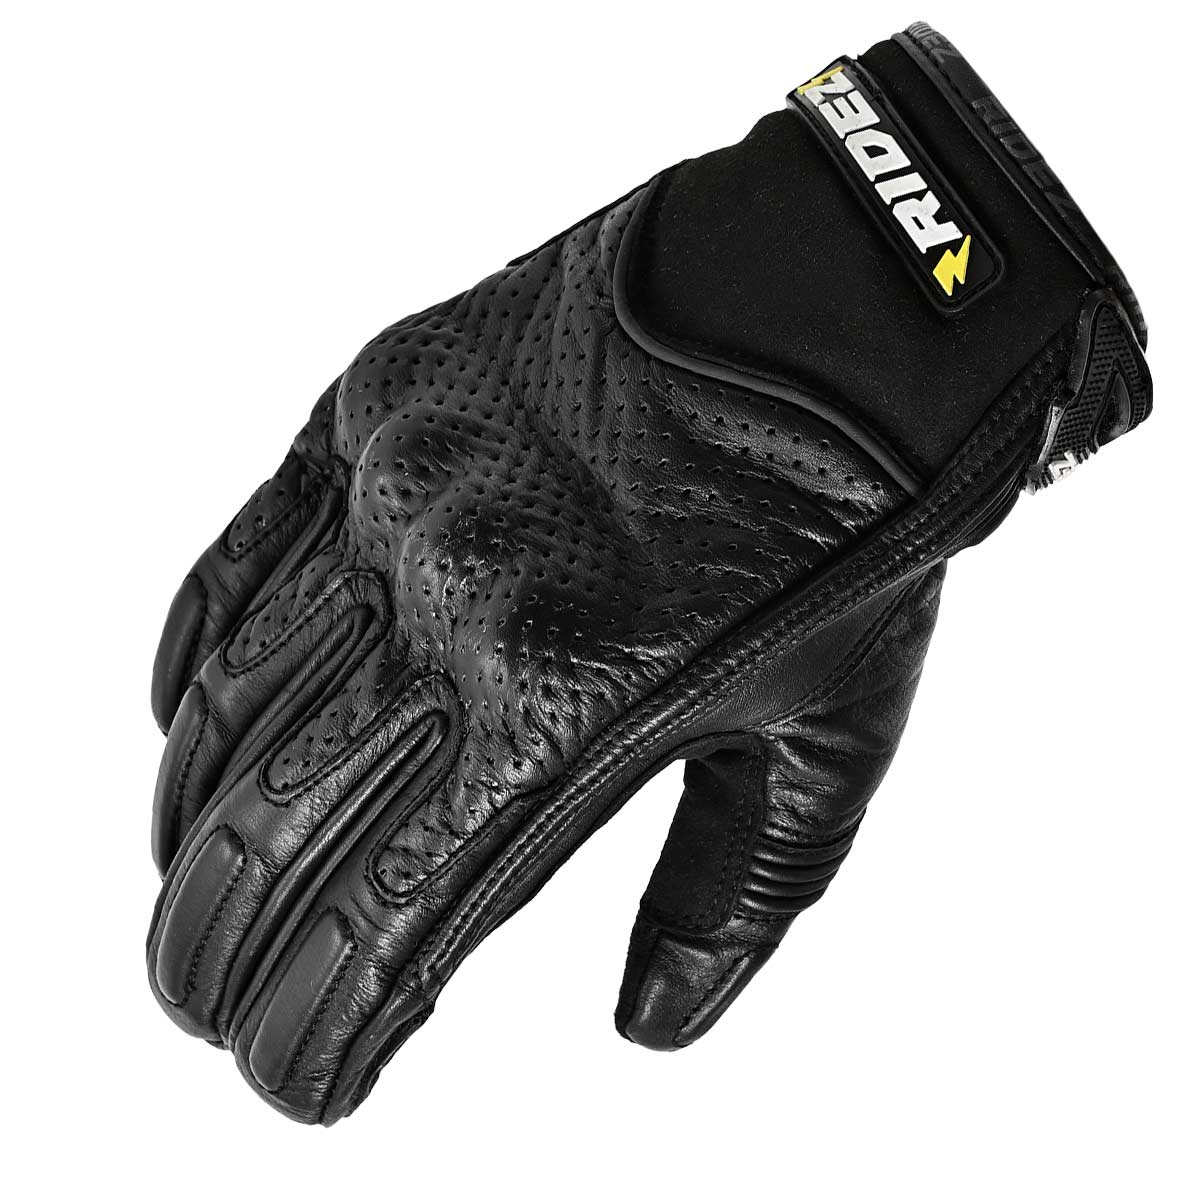 RIDEZ NEUTRINO GLOVES BLACK RLG262 Motorcycle Gloves